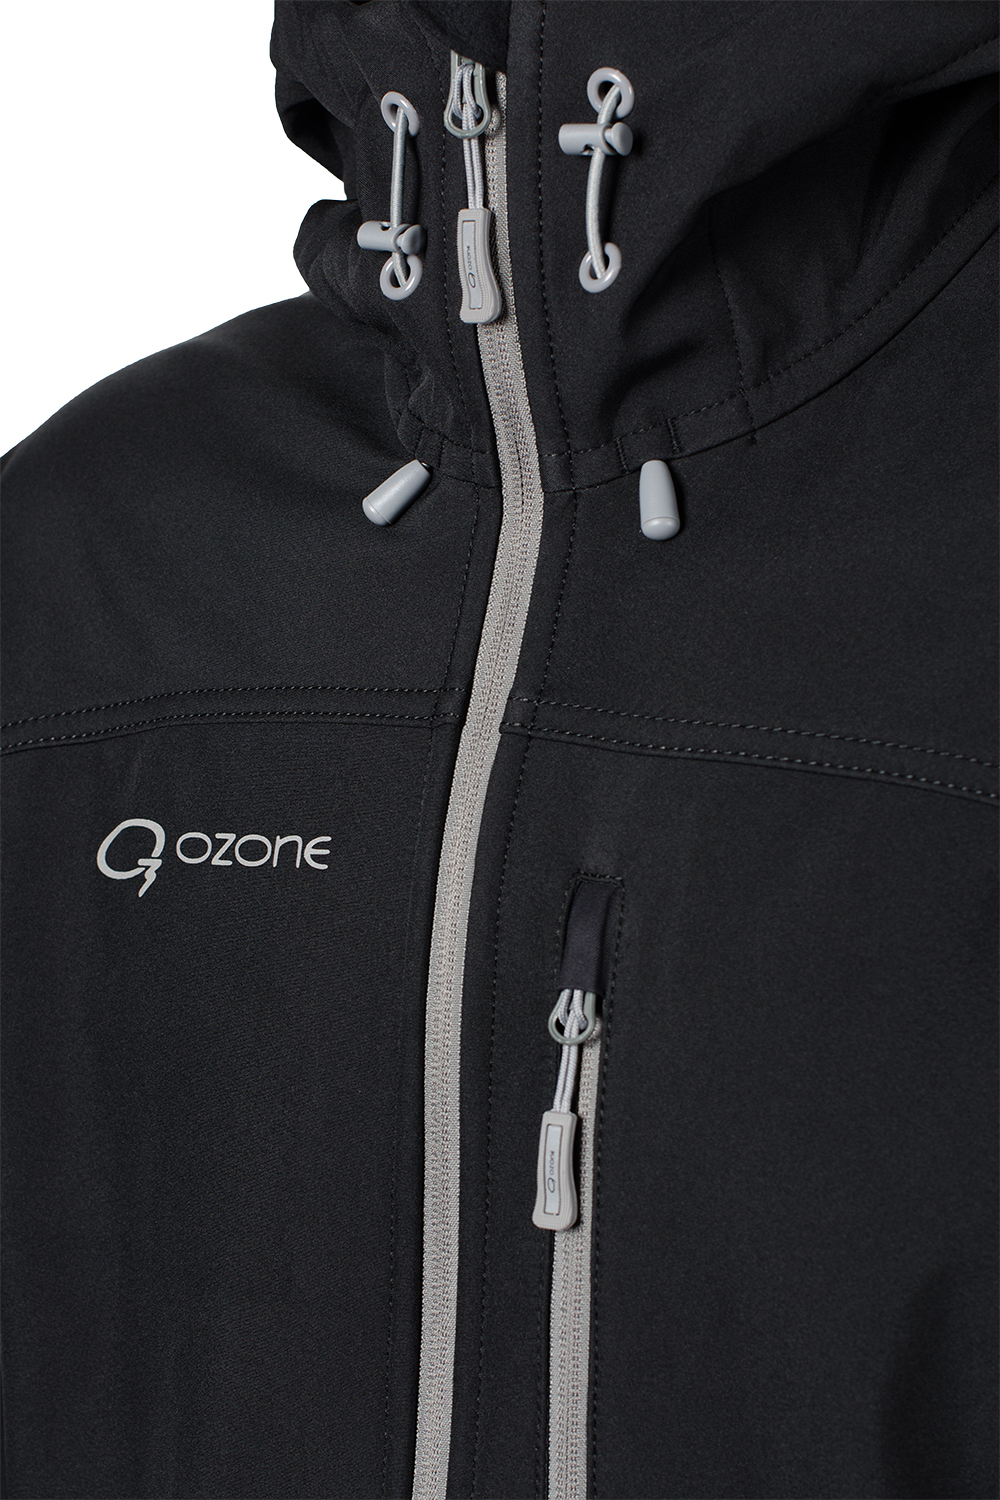 Универсальная soft shell куртка Hot купить в магазине экипировочной одежды O3 Ozone